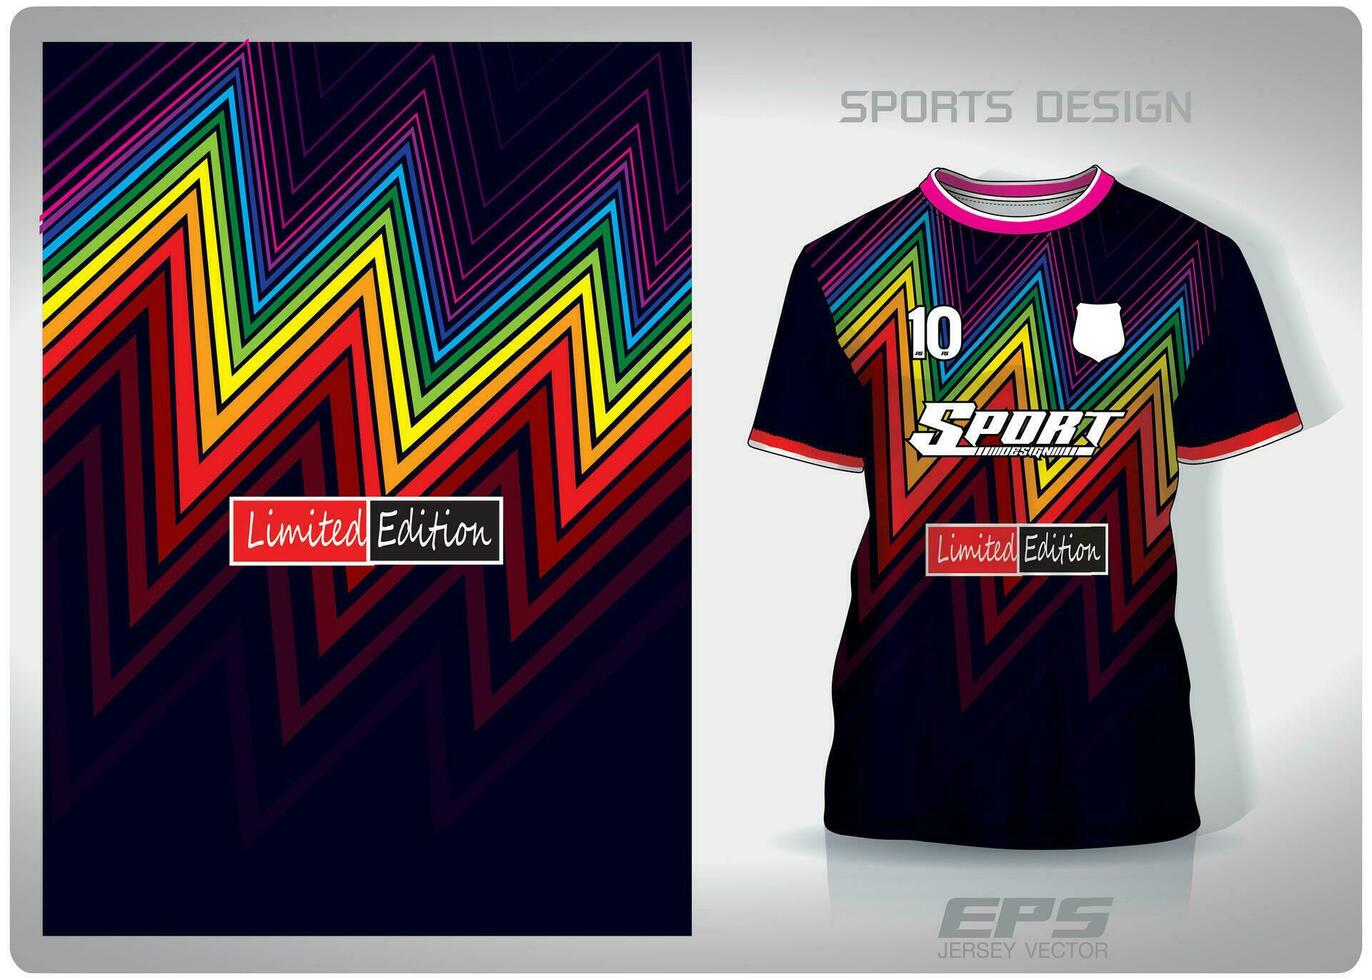 Vektor Sport Hemd Hintergrund Bild.Regenbogen Zickzack- Muster Design, Illustration, Textil- Hintergrund zum Sport T-Shirt, Fußball Jersey Hemd